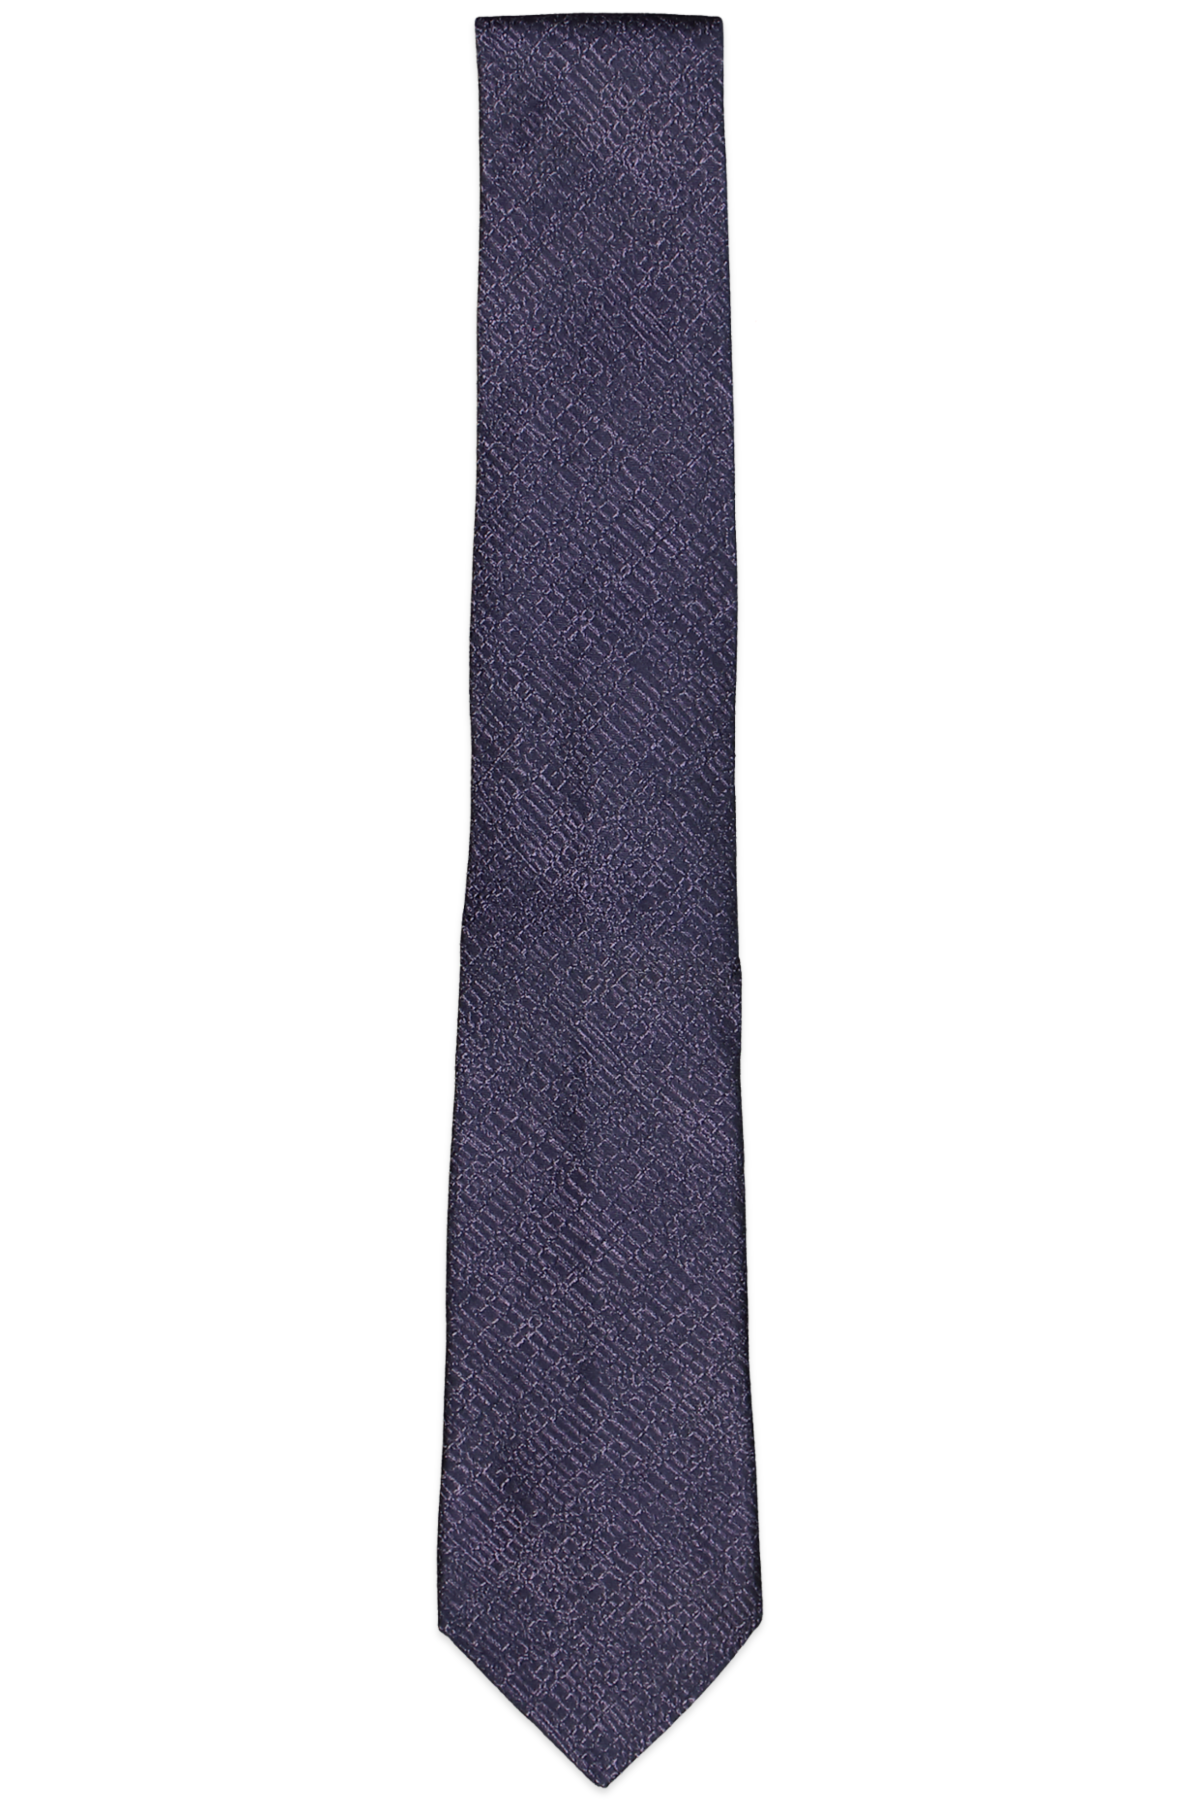 John Varvatos Star Usa Graphic Stripe Classic Tie Purple